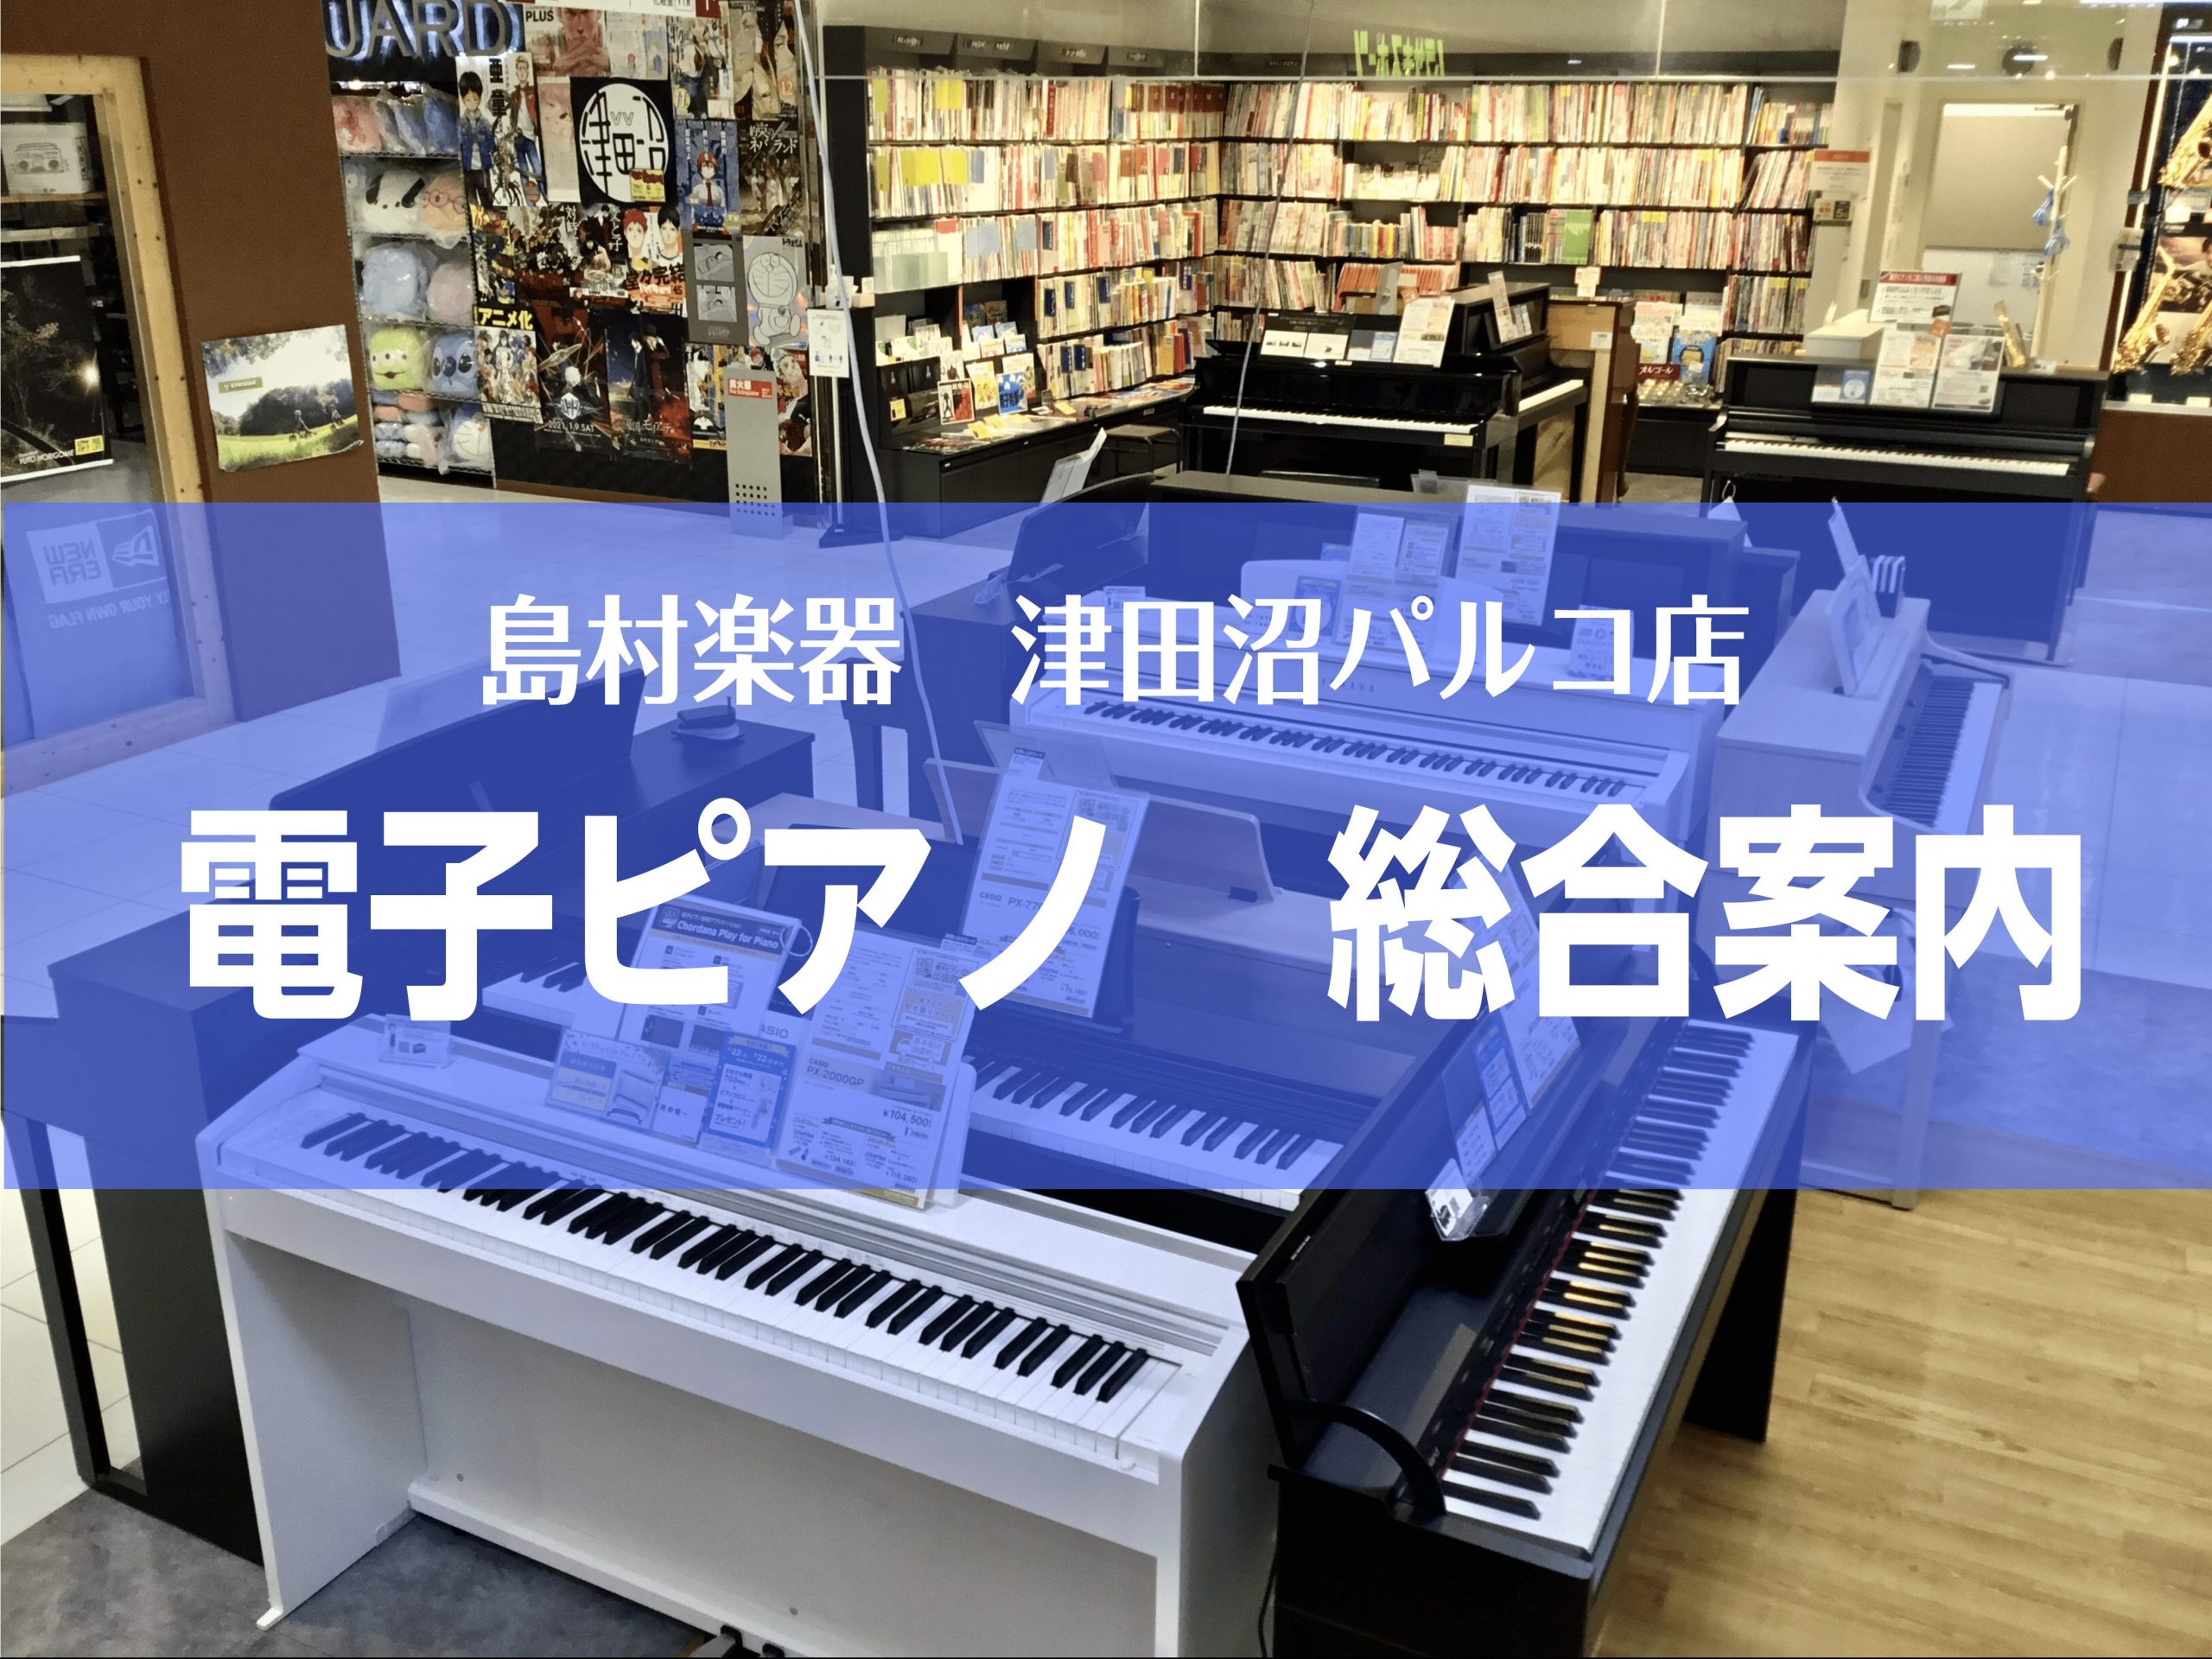 【電子ピアノ】夏のピアノフェア2022